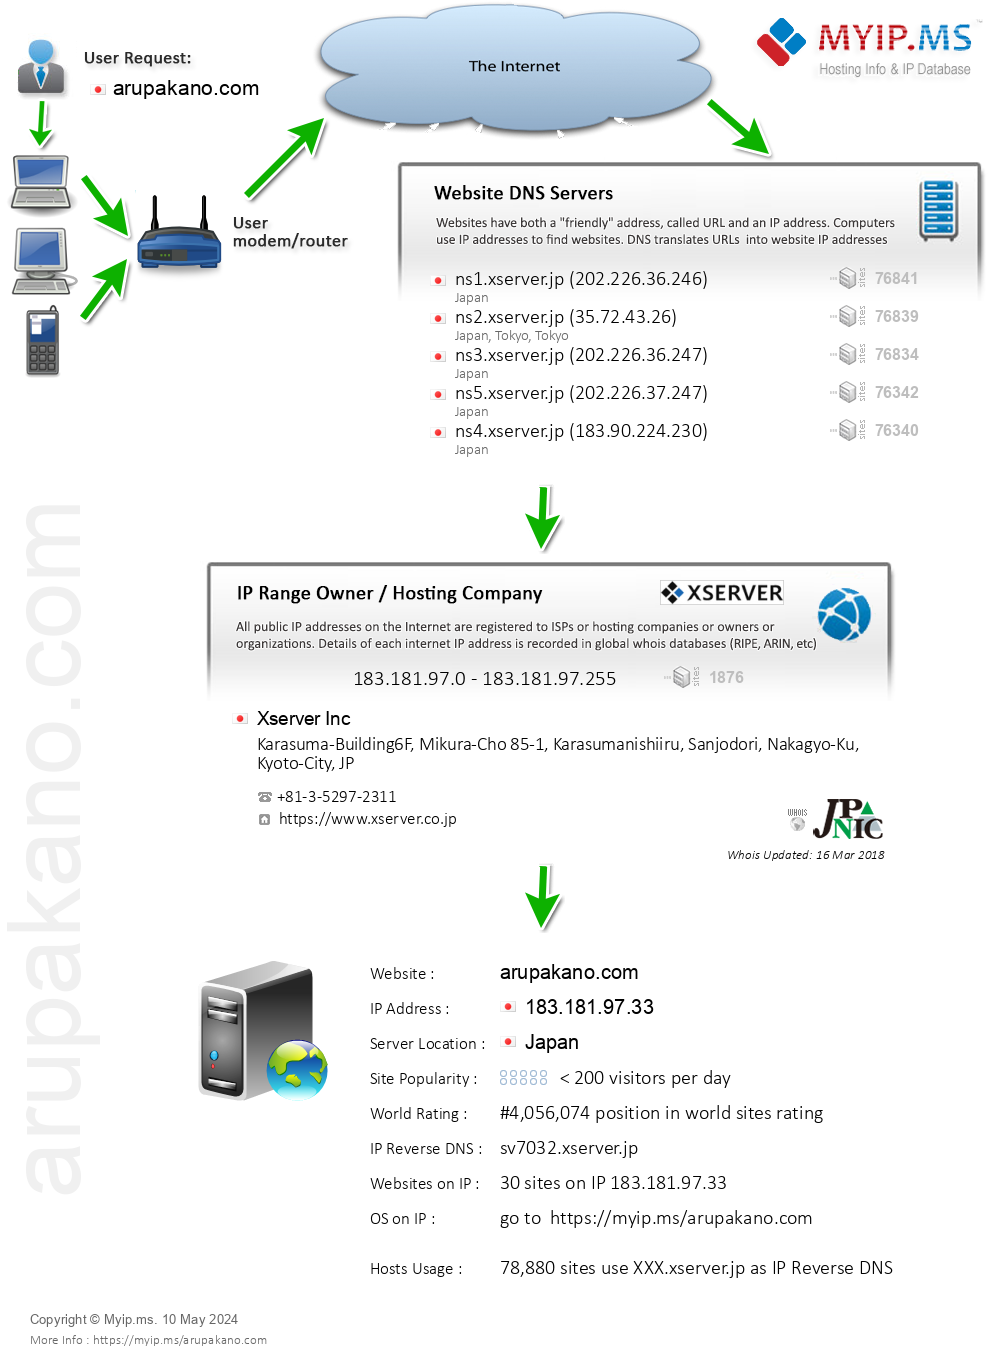 Arupakano.com - Website Hosting Visual IP Diagram